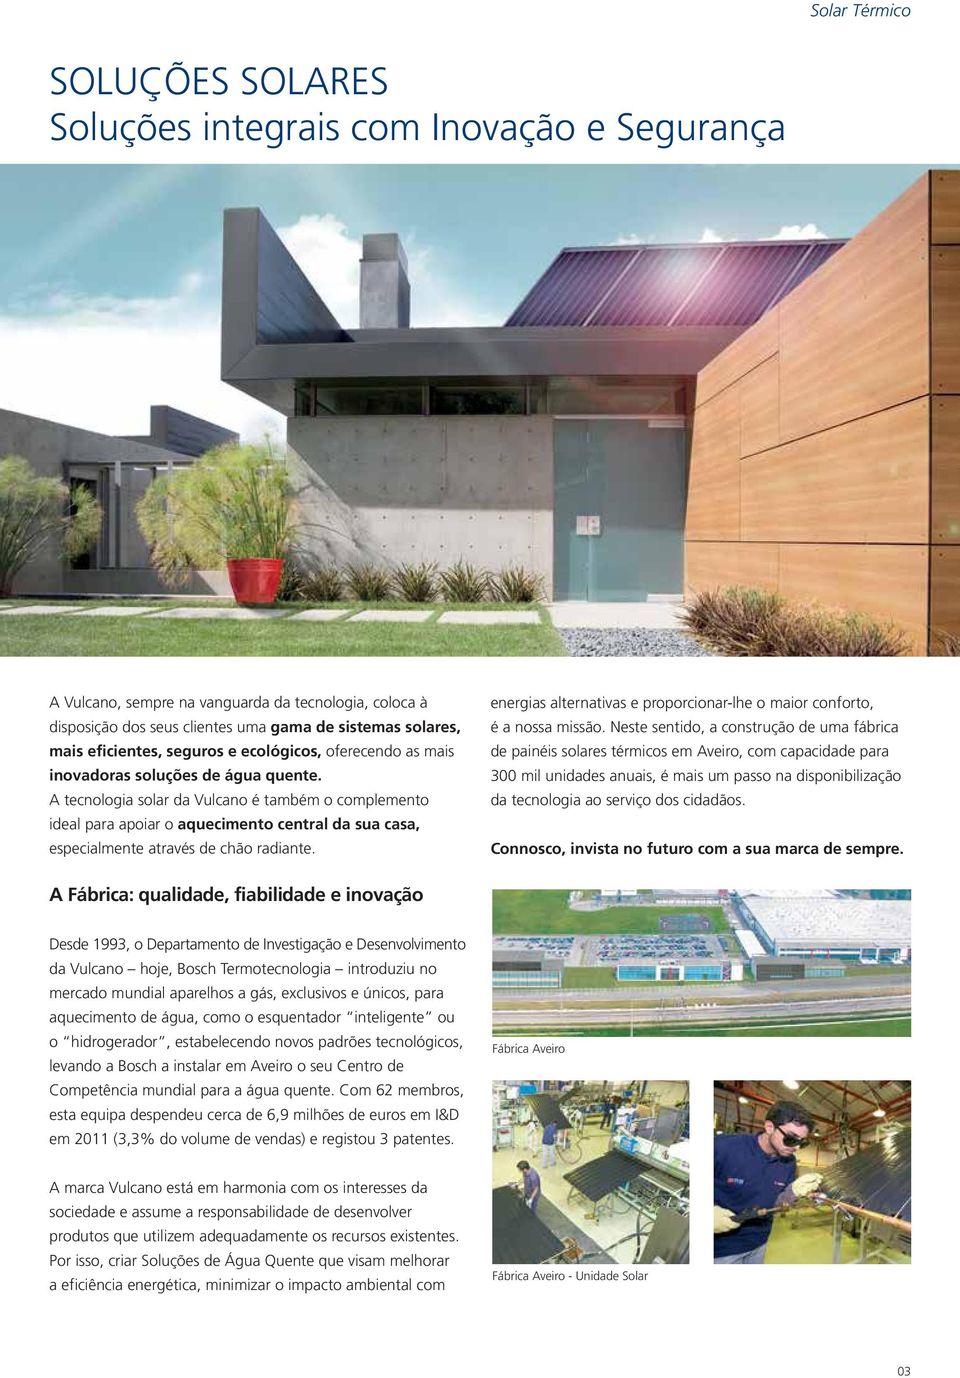 A tecnologia solar da Vulcano é também o complemento ideal para apoiar o aquecimento central da sua casa, especialmente através de chão radiante.